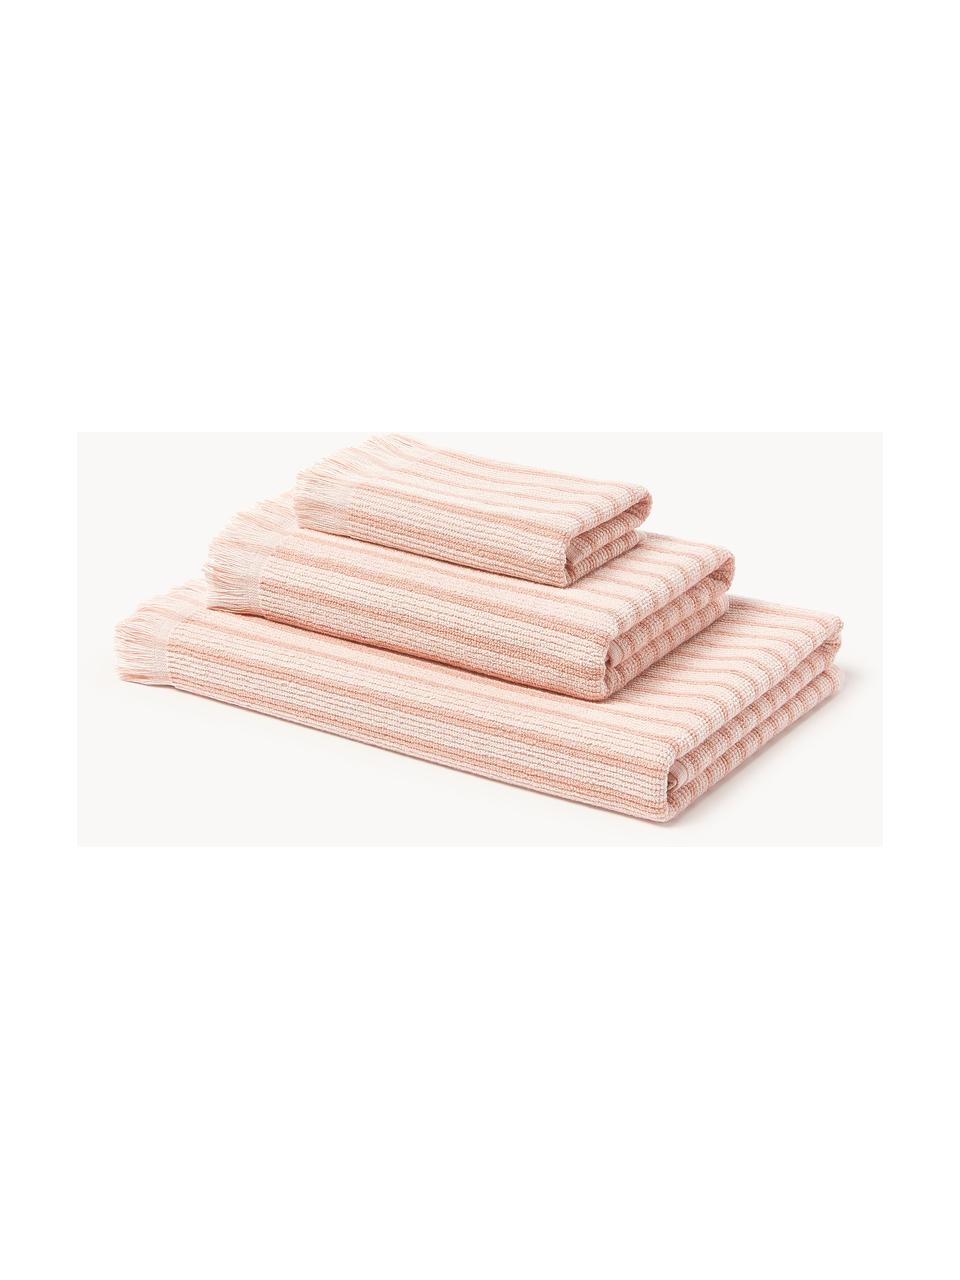 Serviettes de toilette Irma, tailles variées, Rose pâle, 4 éléments (2 serviettes de toilette et 2 draps de bain)